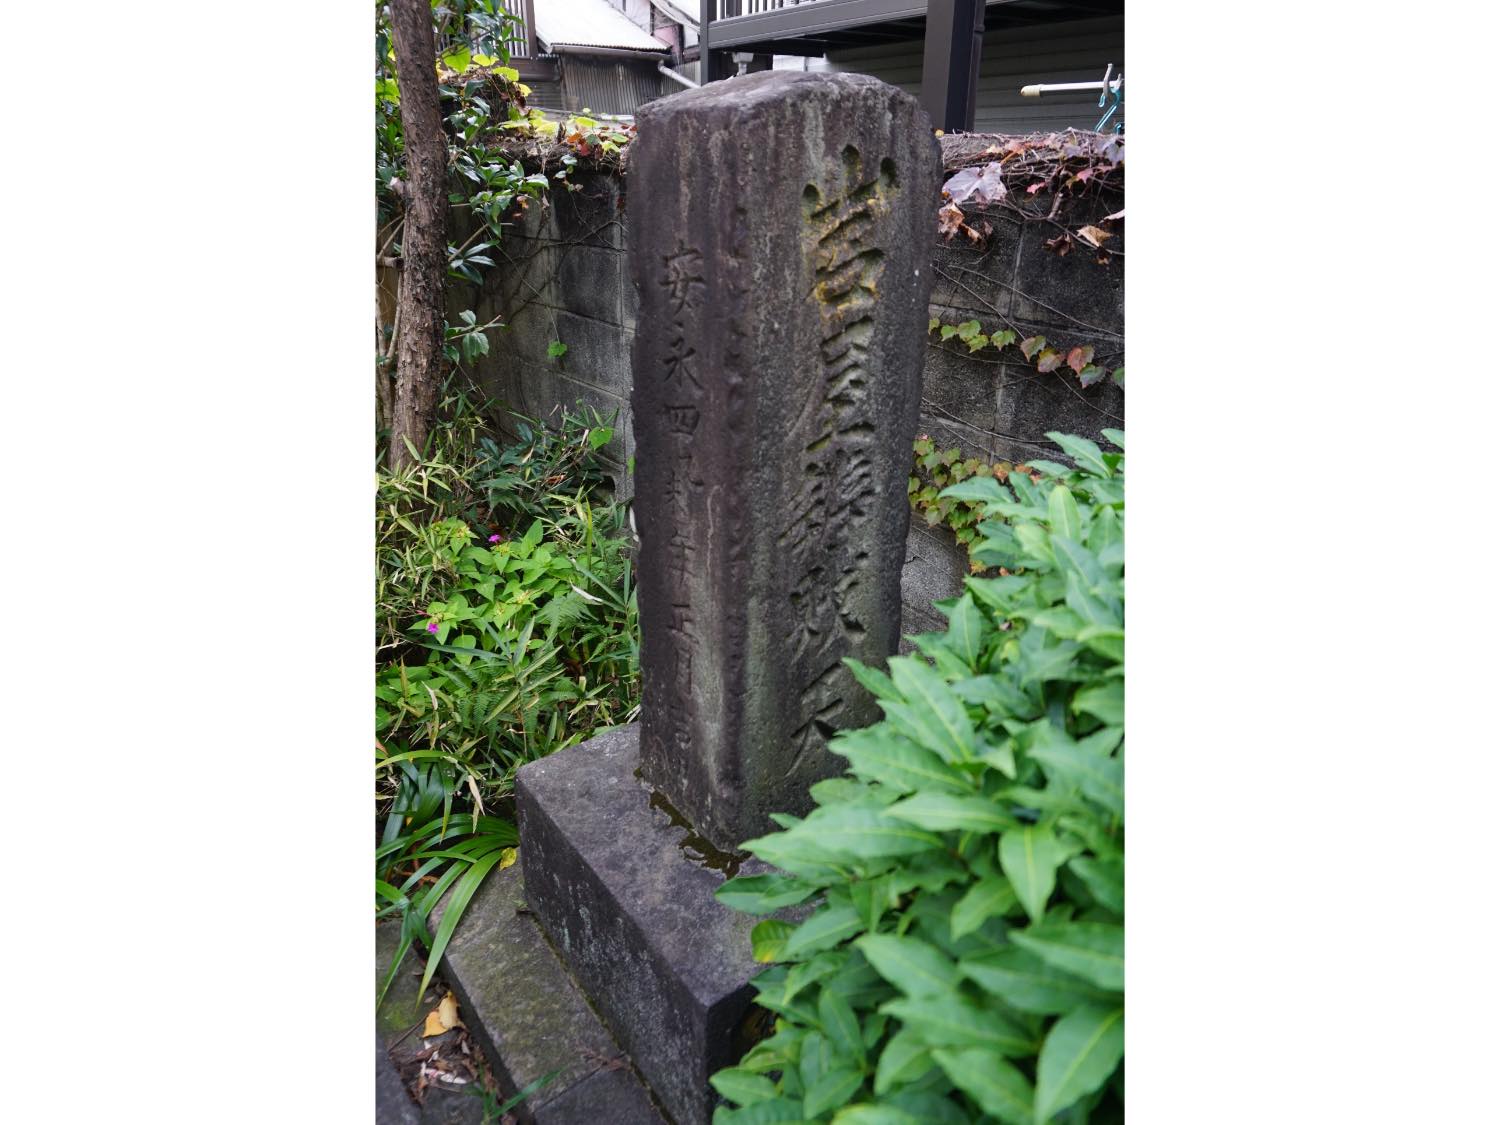 境内に残る「岩屋辯財天」の石碑には、「江戸裏鬼門鎮守」「安永四年」の文字が。これが江戸最初の山手七福神と呼ばれる所以。